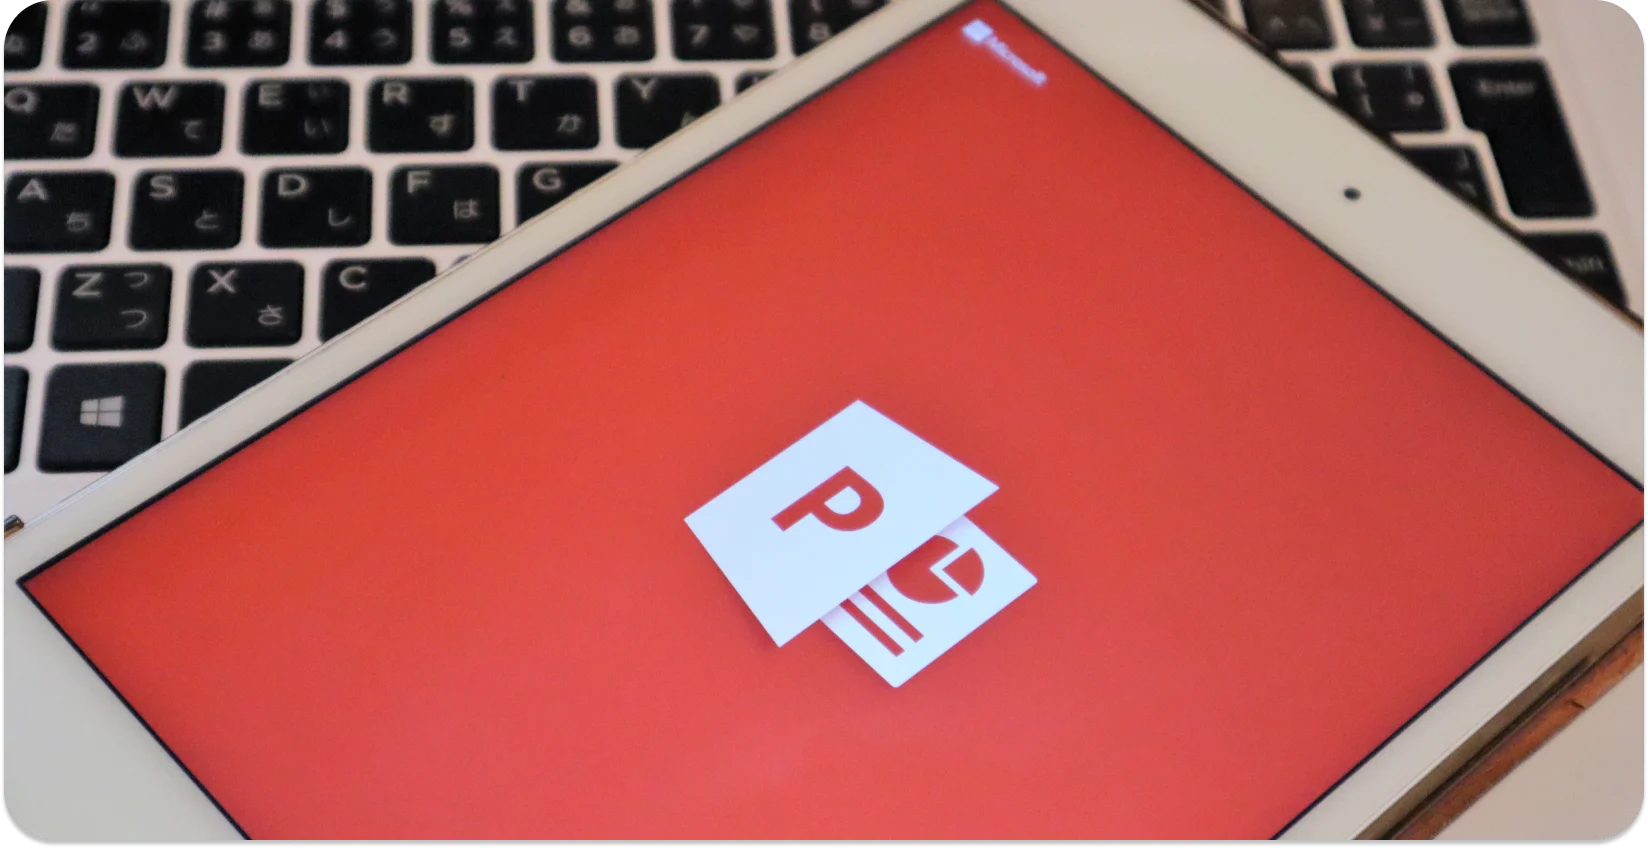 Tablet em um teclado exibindo PowerPoint logotipo, pronto para conversão de áudio em texto.